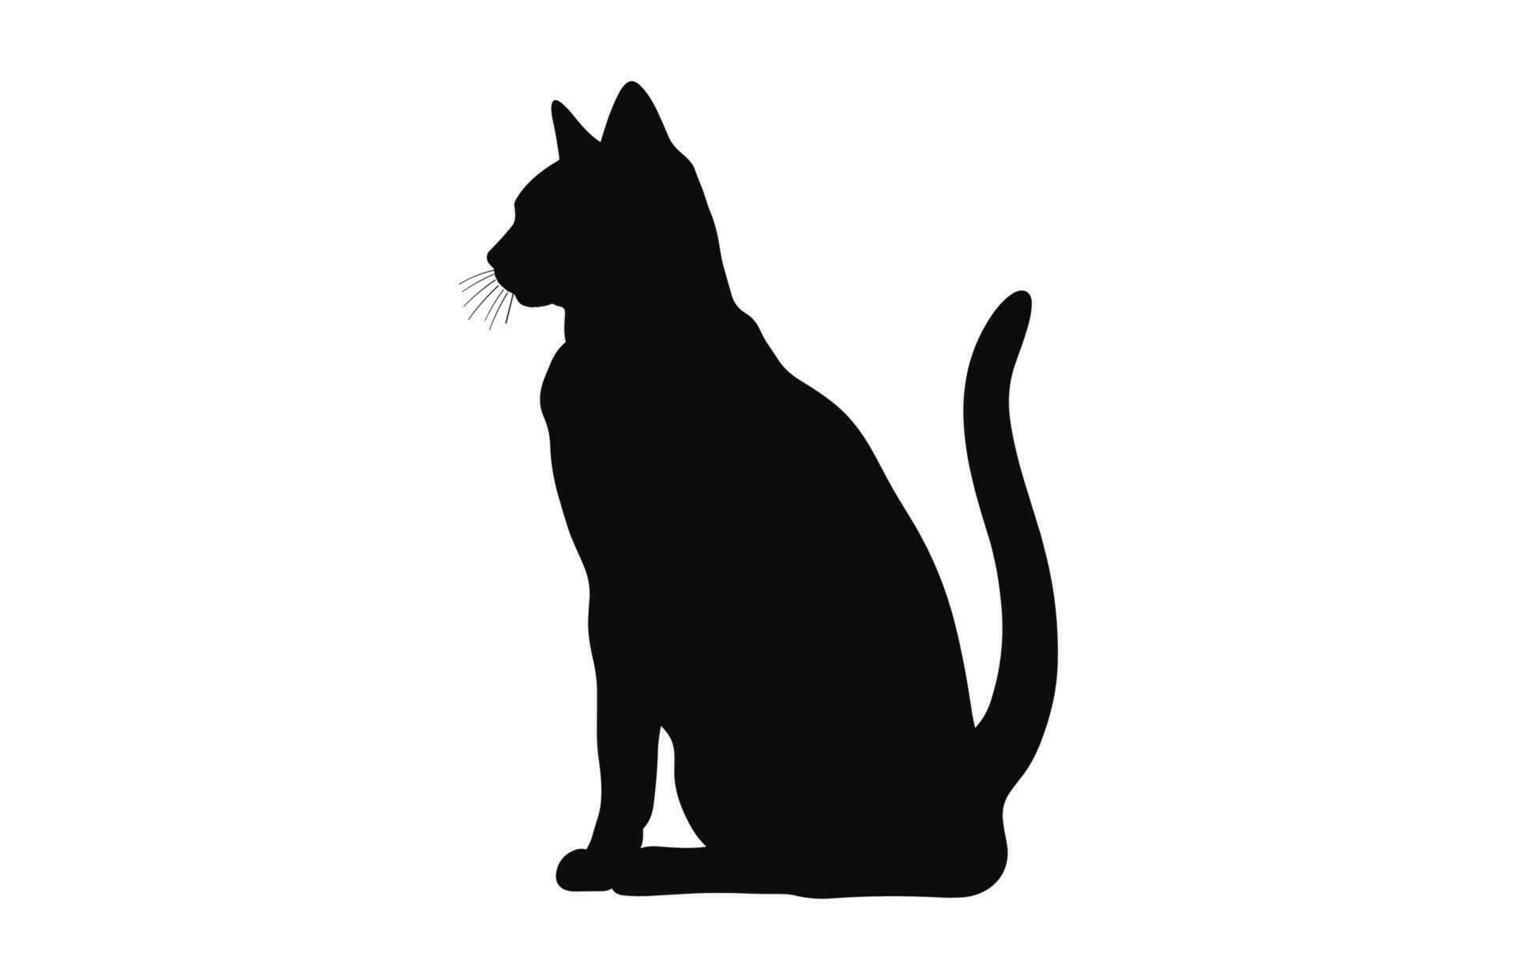 egiziano gatto nero silhouette vettore gratuito